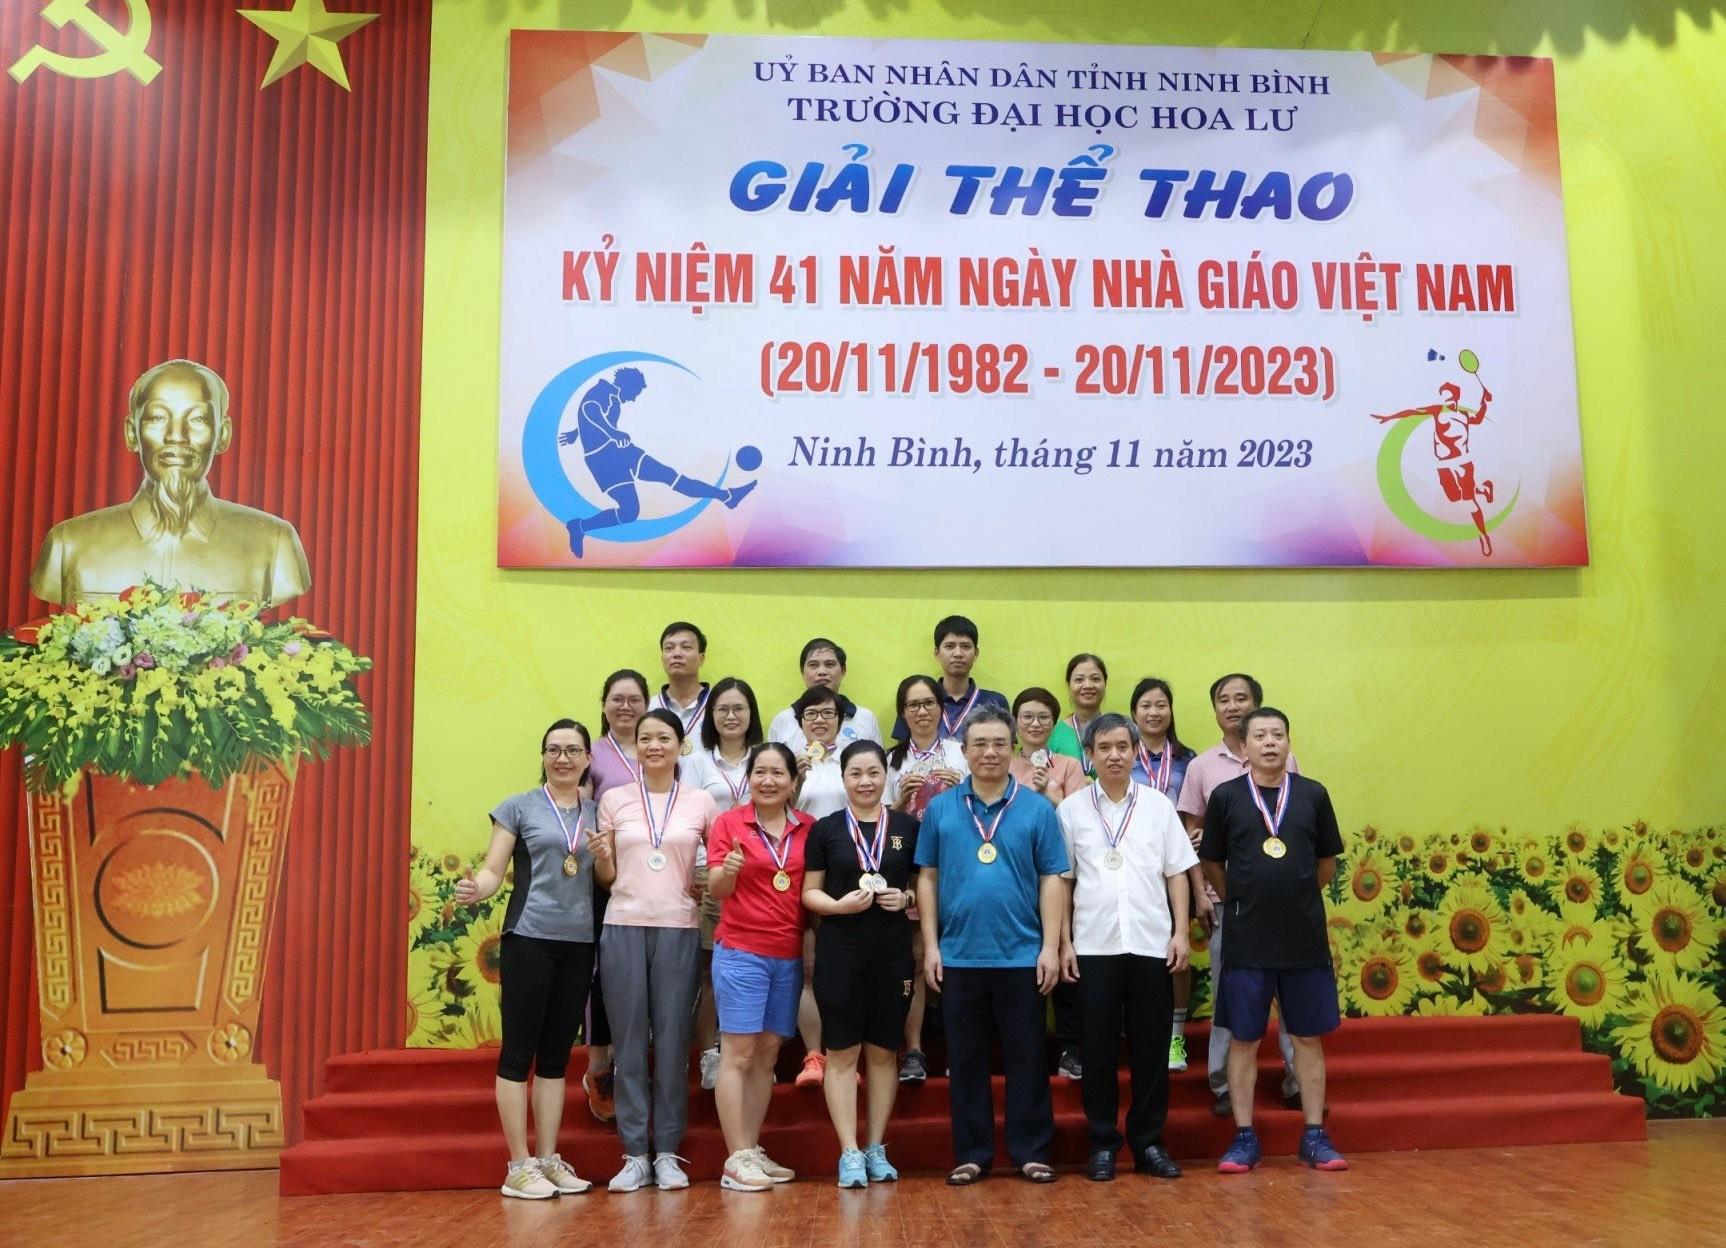 Hội thi đấu thể dục thể thao cán bộ cán bộ giảng viên, nhân viên và sinh viên kỷ niệm 41 năm ngày Nhà giáo Việt Nam 20/11